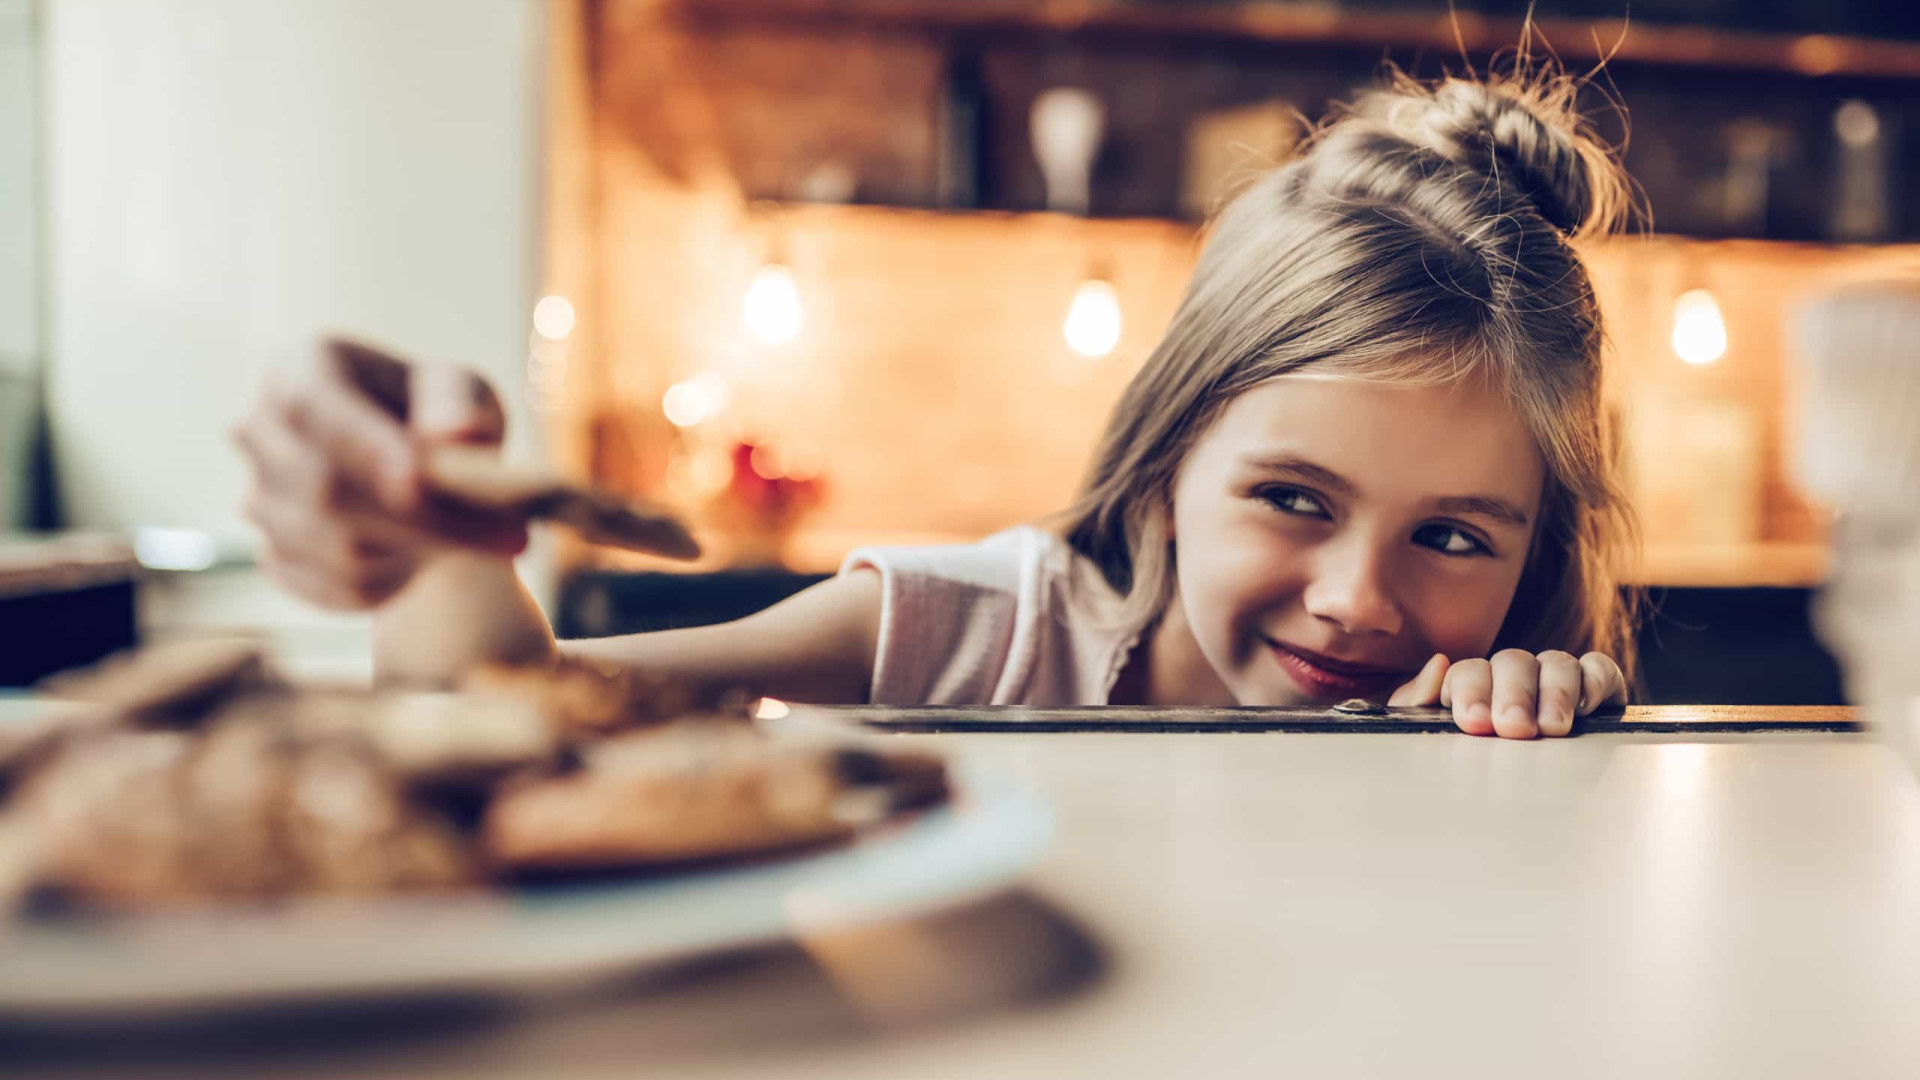 Quatro alimentos que as crianças devem evitar